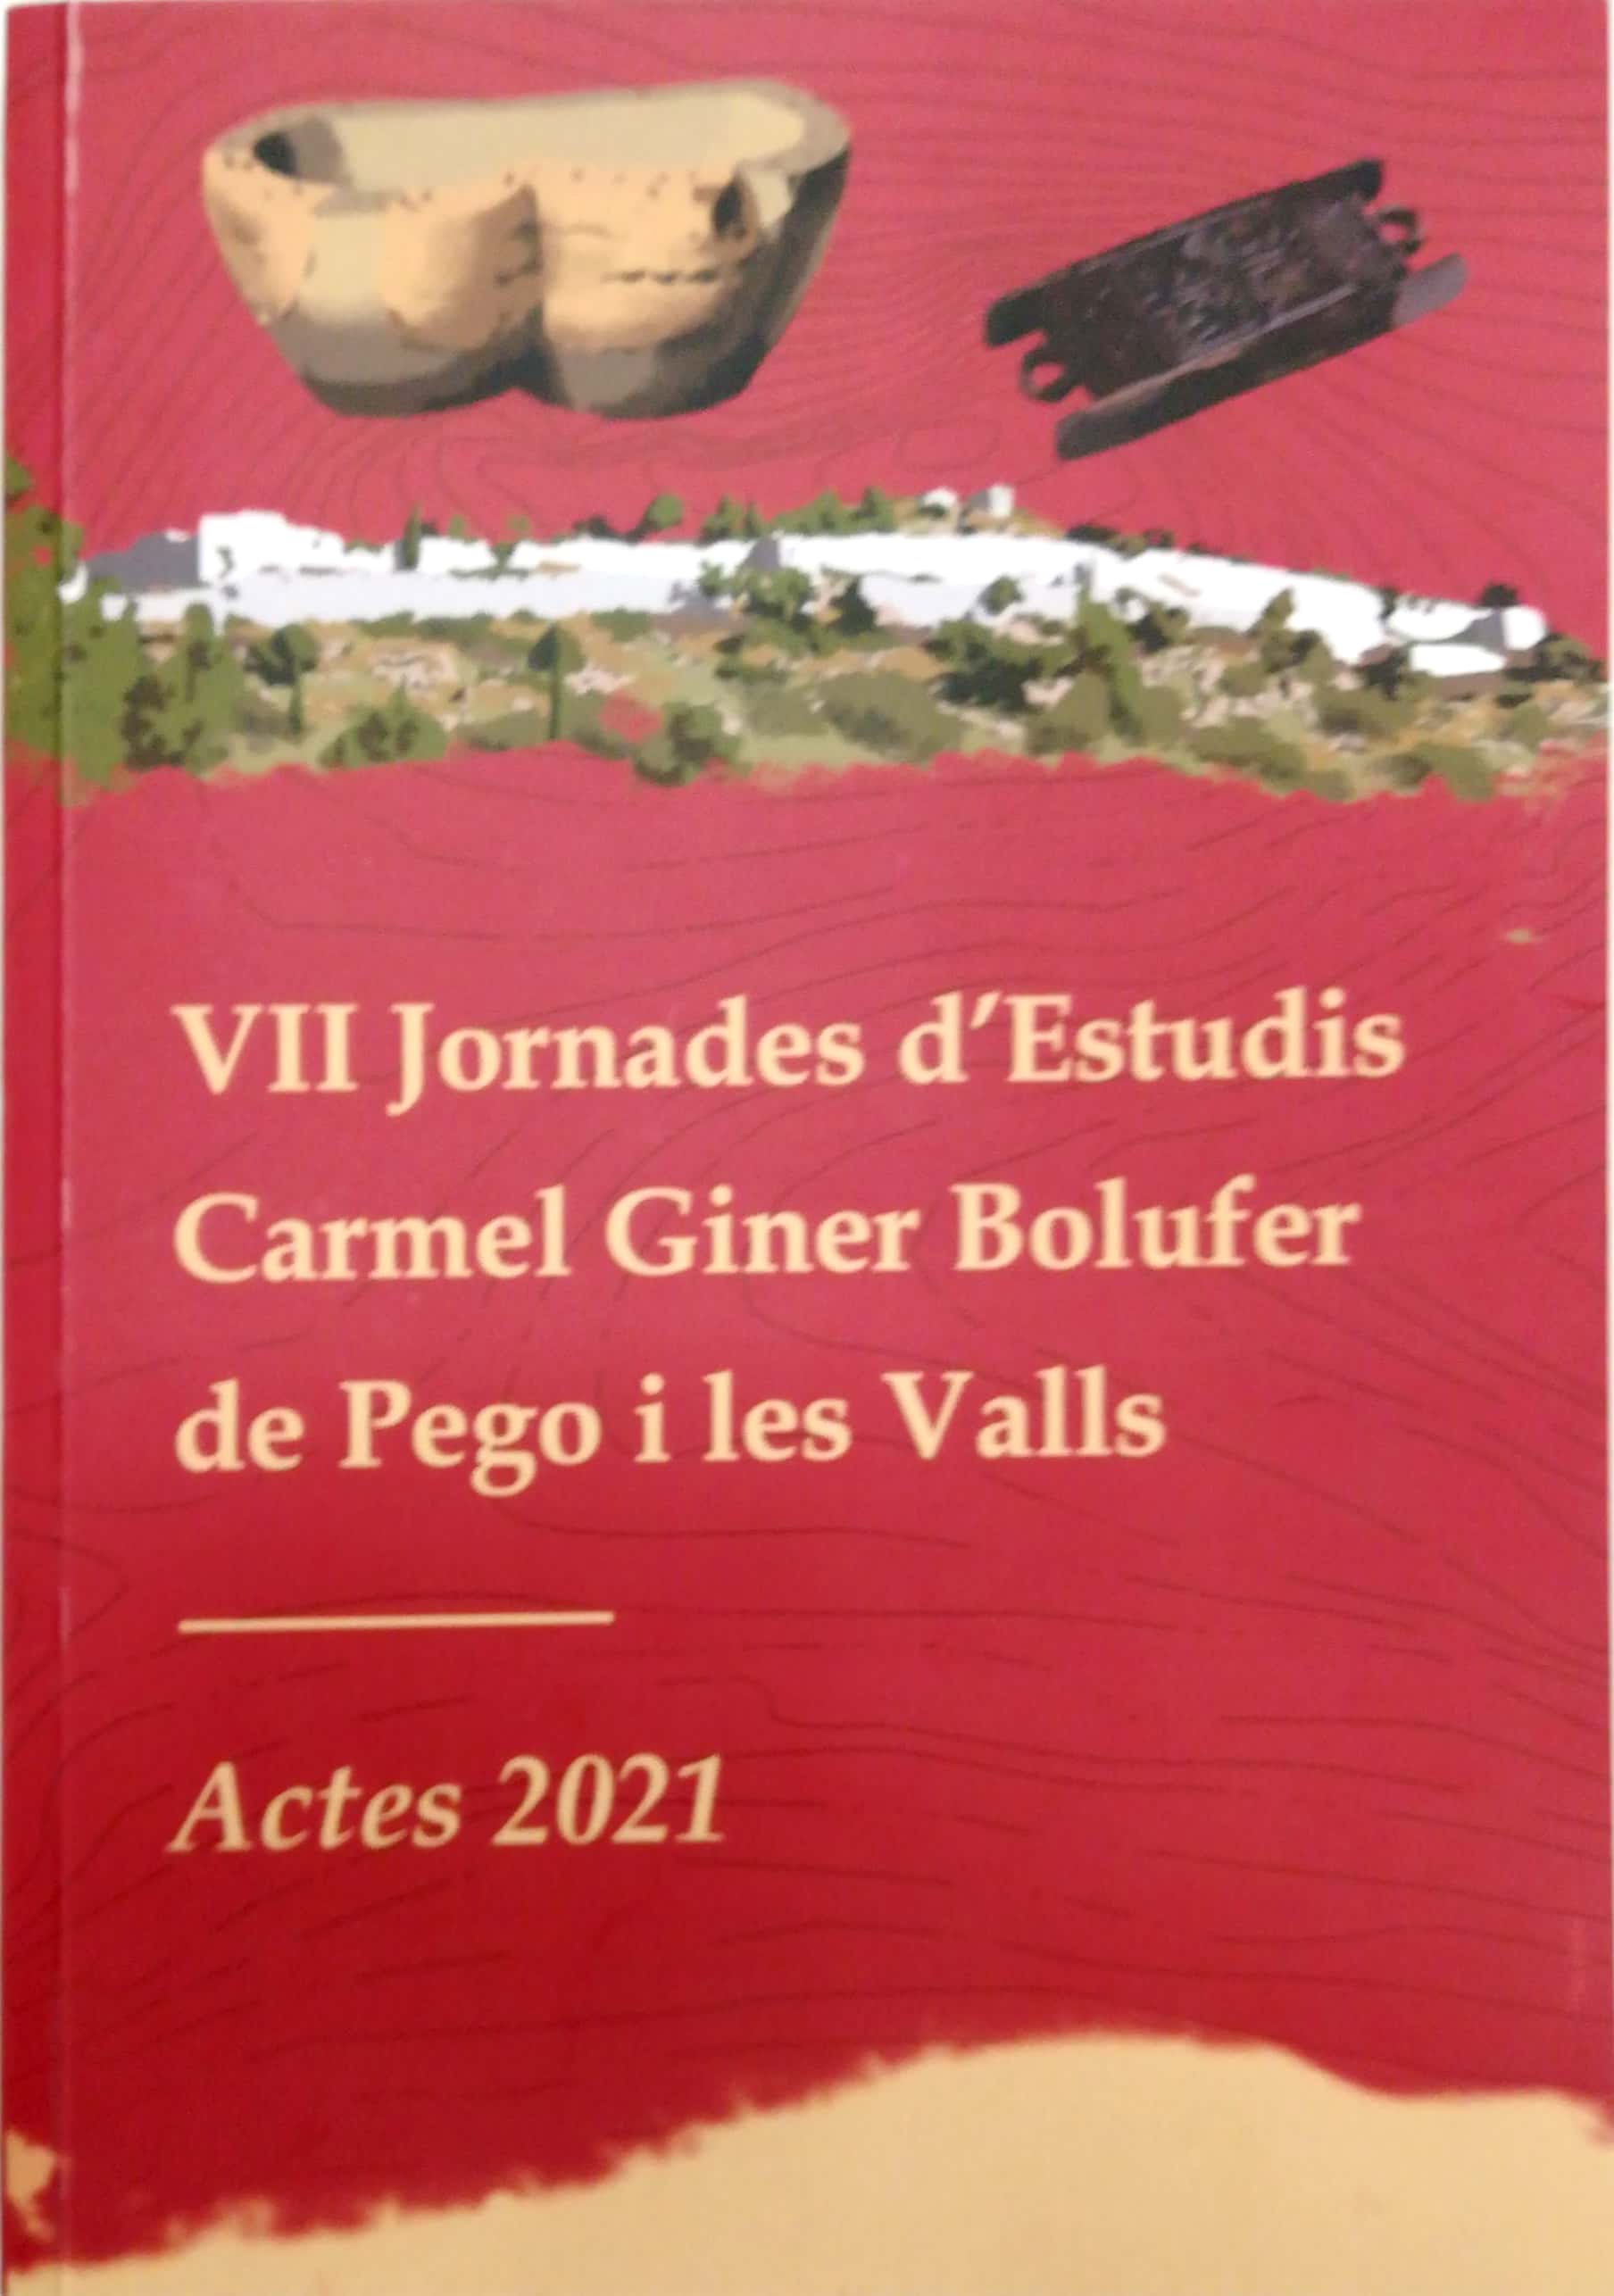 VIII Jornades d'Estudis Carmel Giner Bolufer de Pego i les Valls. Actes 2021.